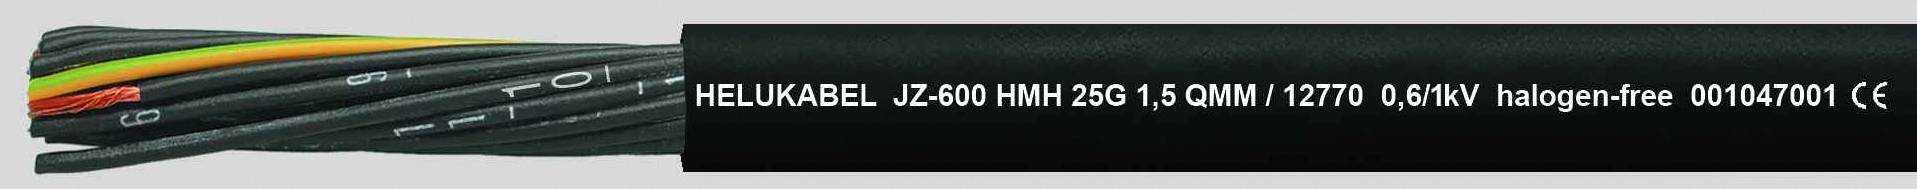 HELUKABEL JZ-600 HMH Steuerleitung 7 G 2.50 mm² Schwarz 12778-1000 1000 m